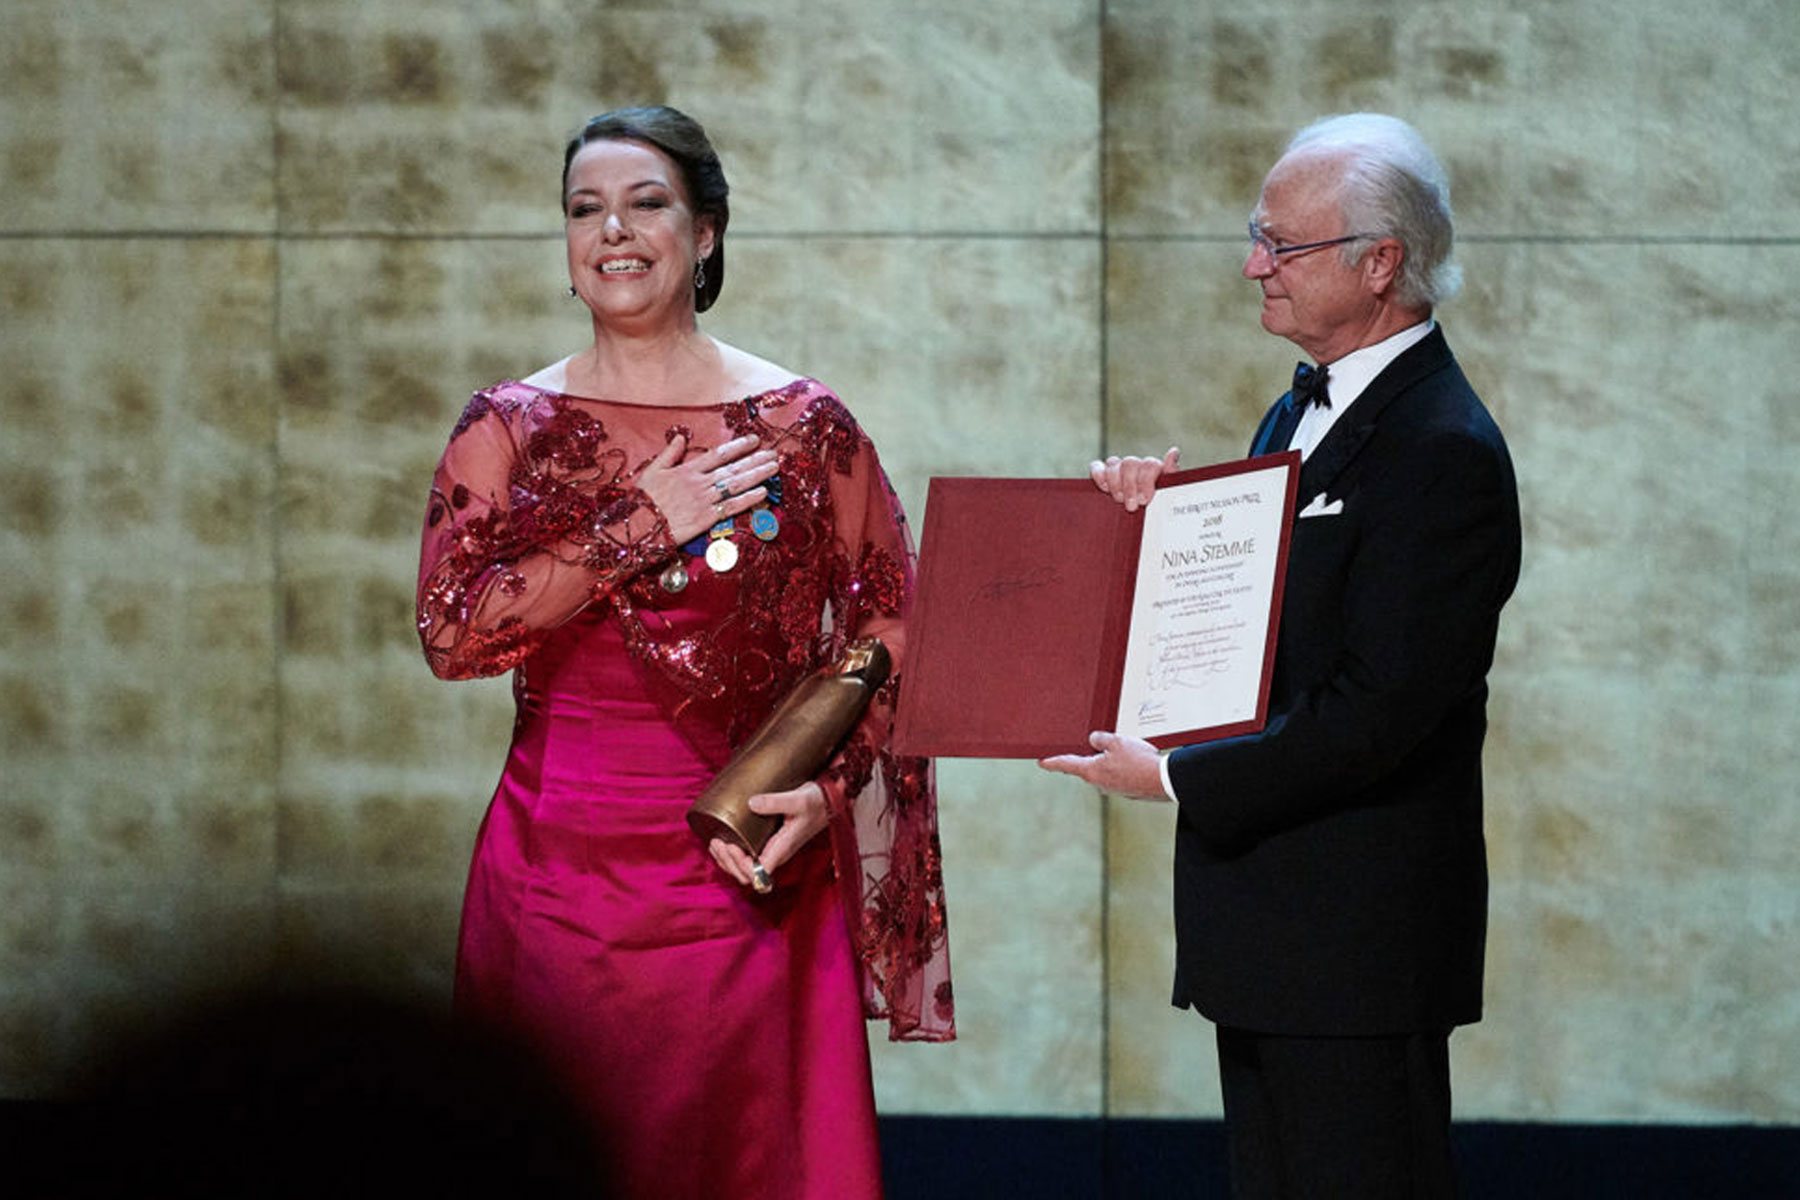 Du visar för närvarande Nina Stemme – Birgit Nilsson Prize prisceremoni 2018